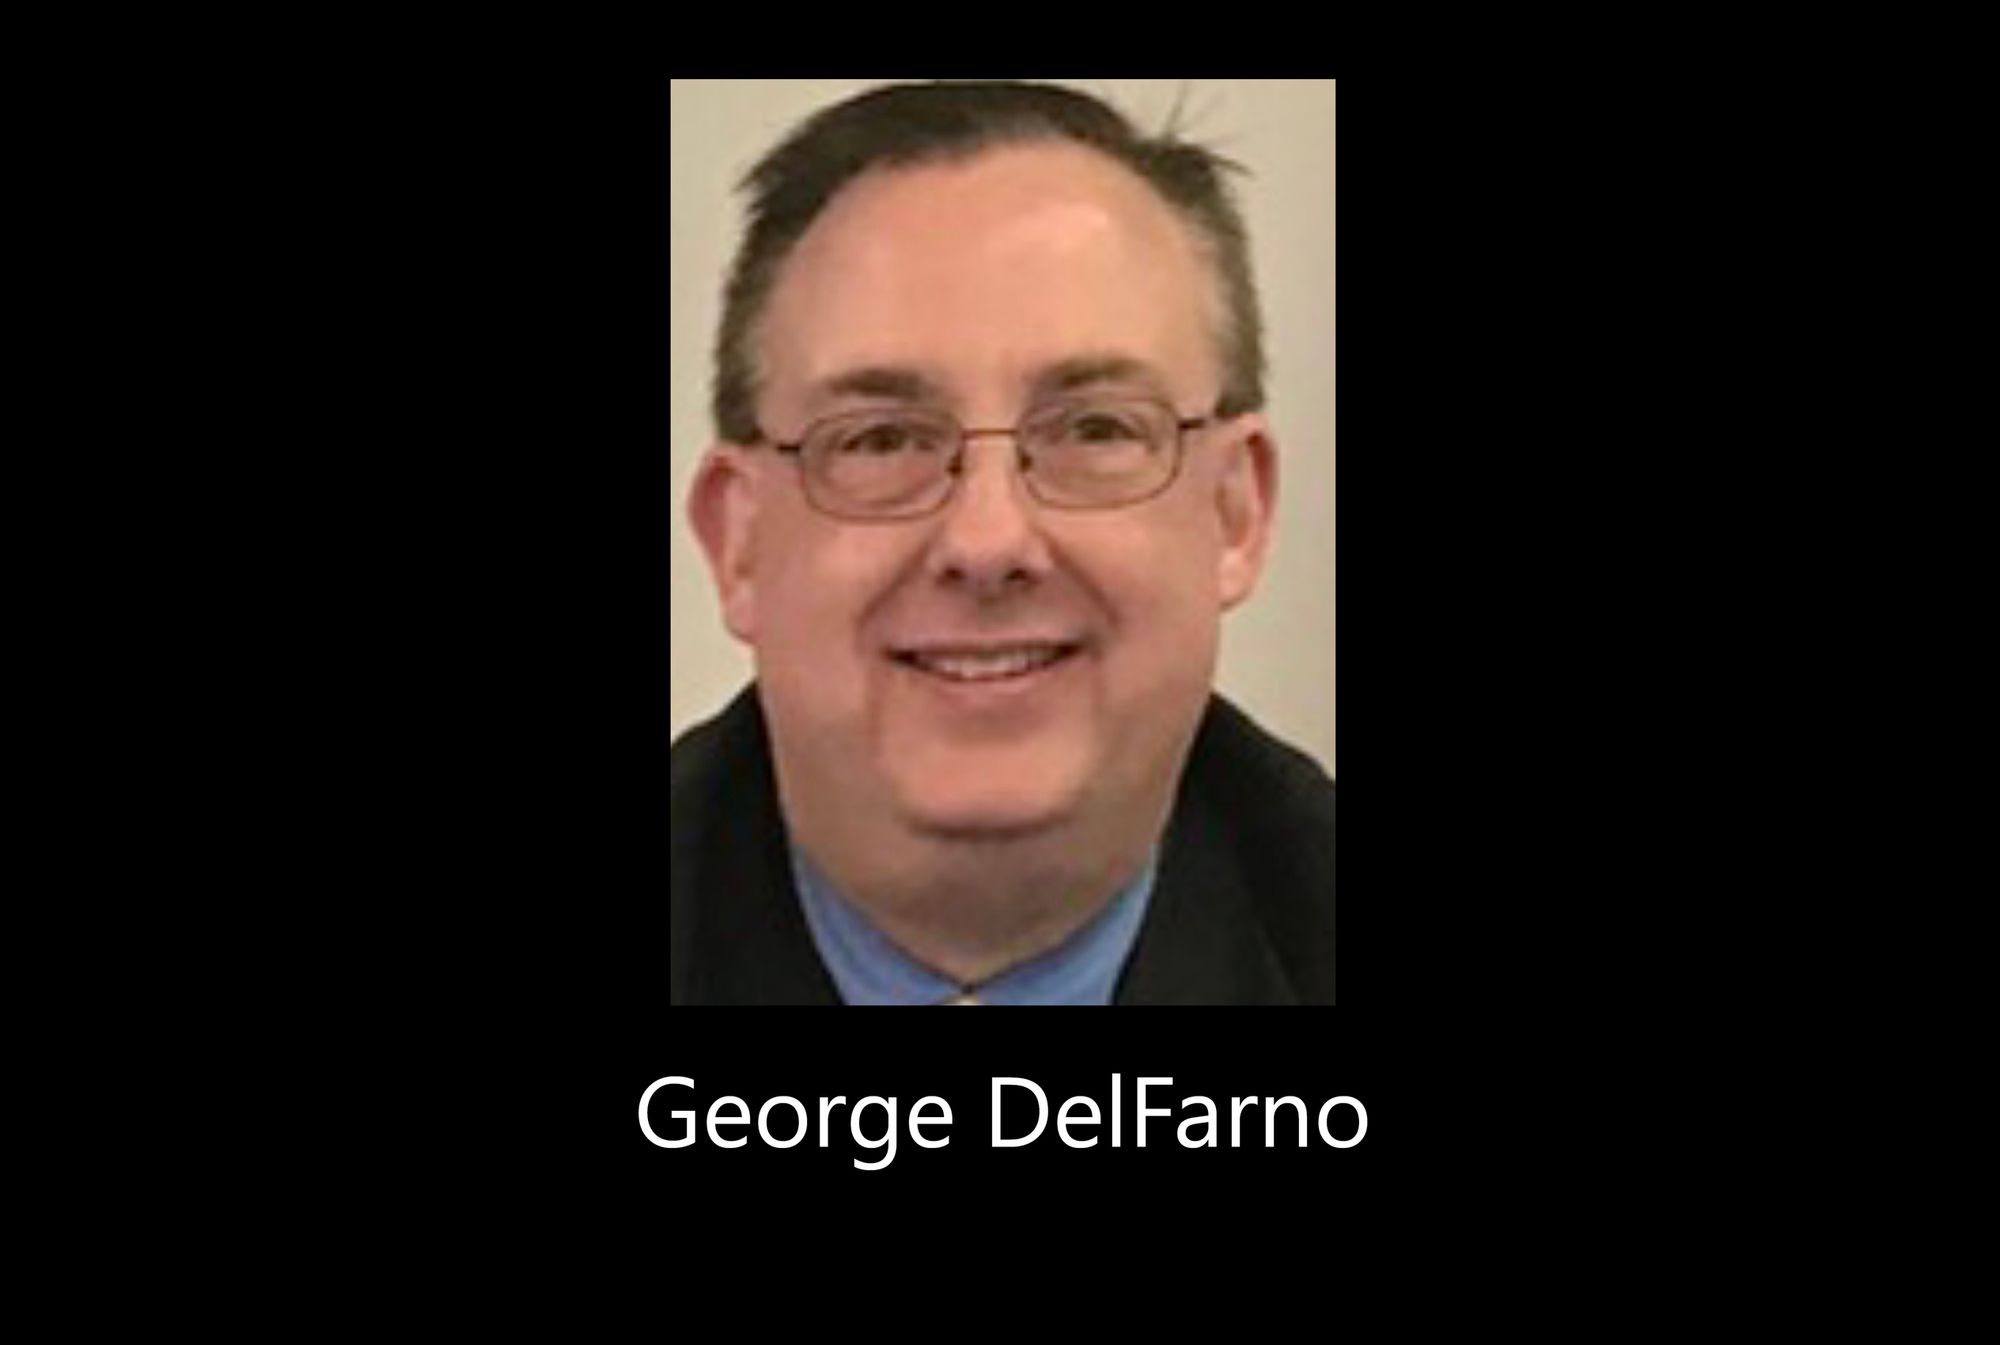 George DelFarno